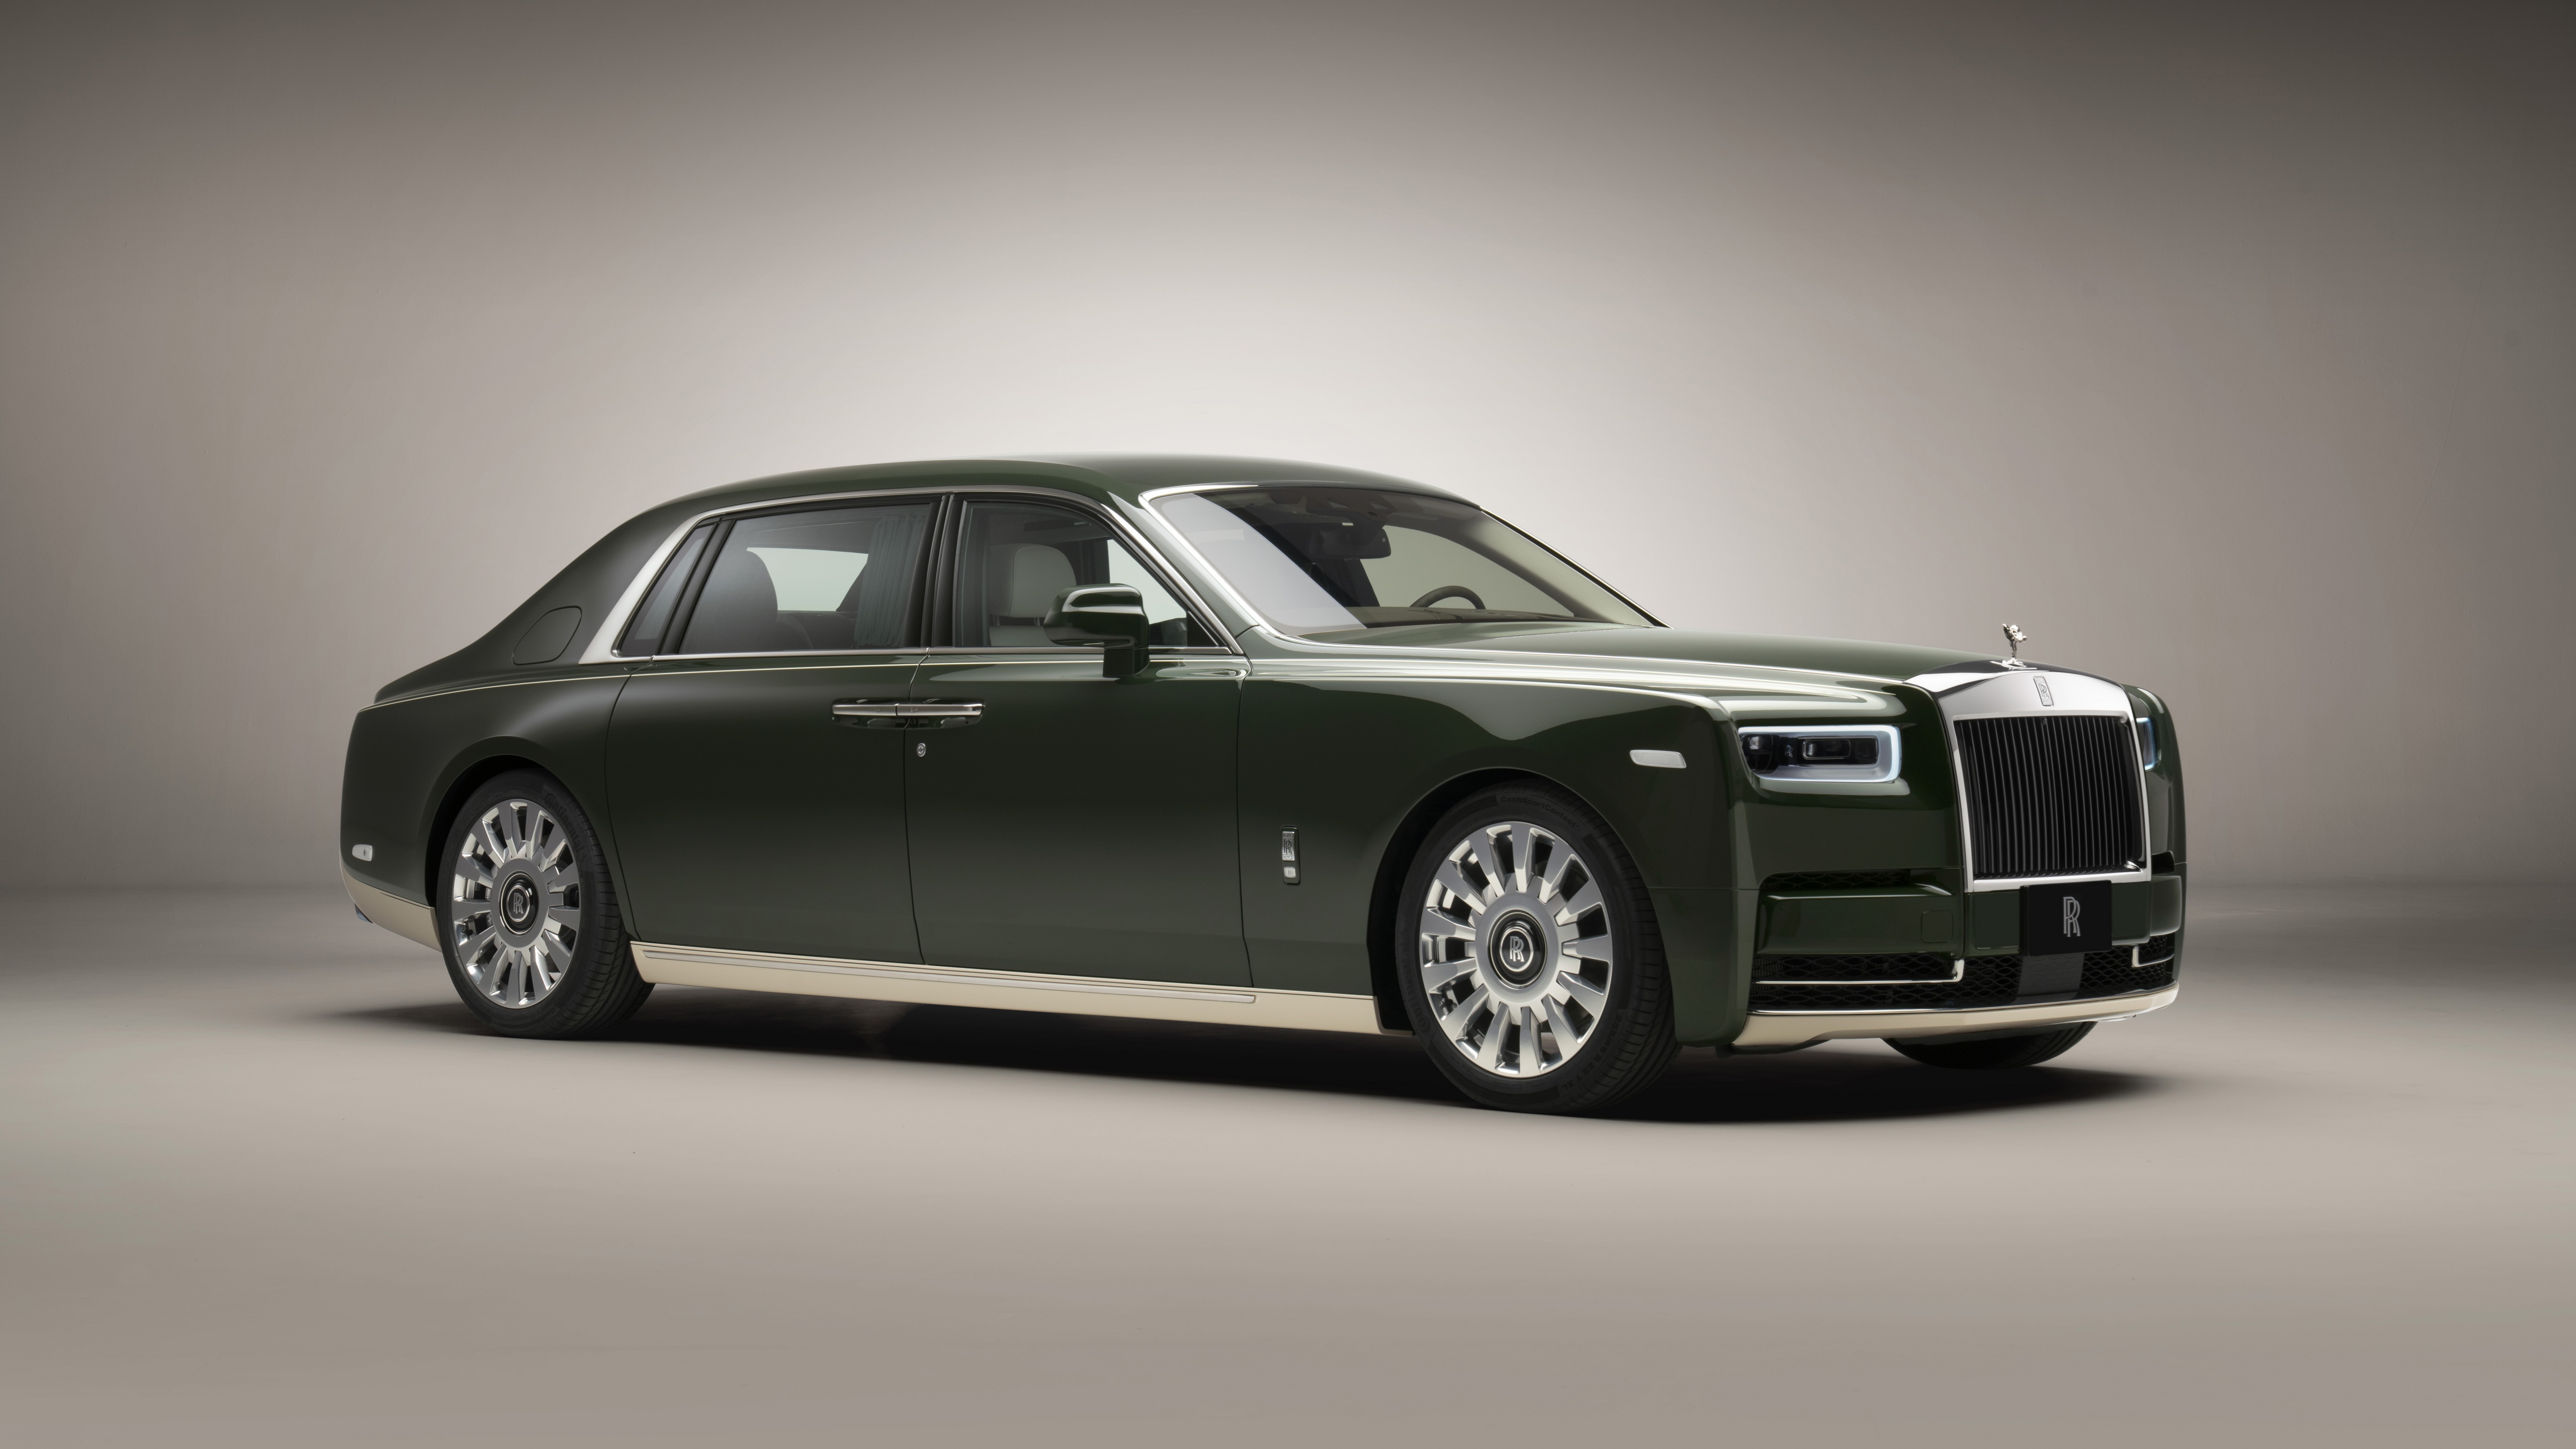 Rolls Royce Phantom Oribe Wallpaper 4K, 5K, 8K, Cars